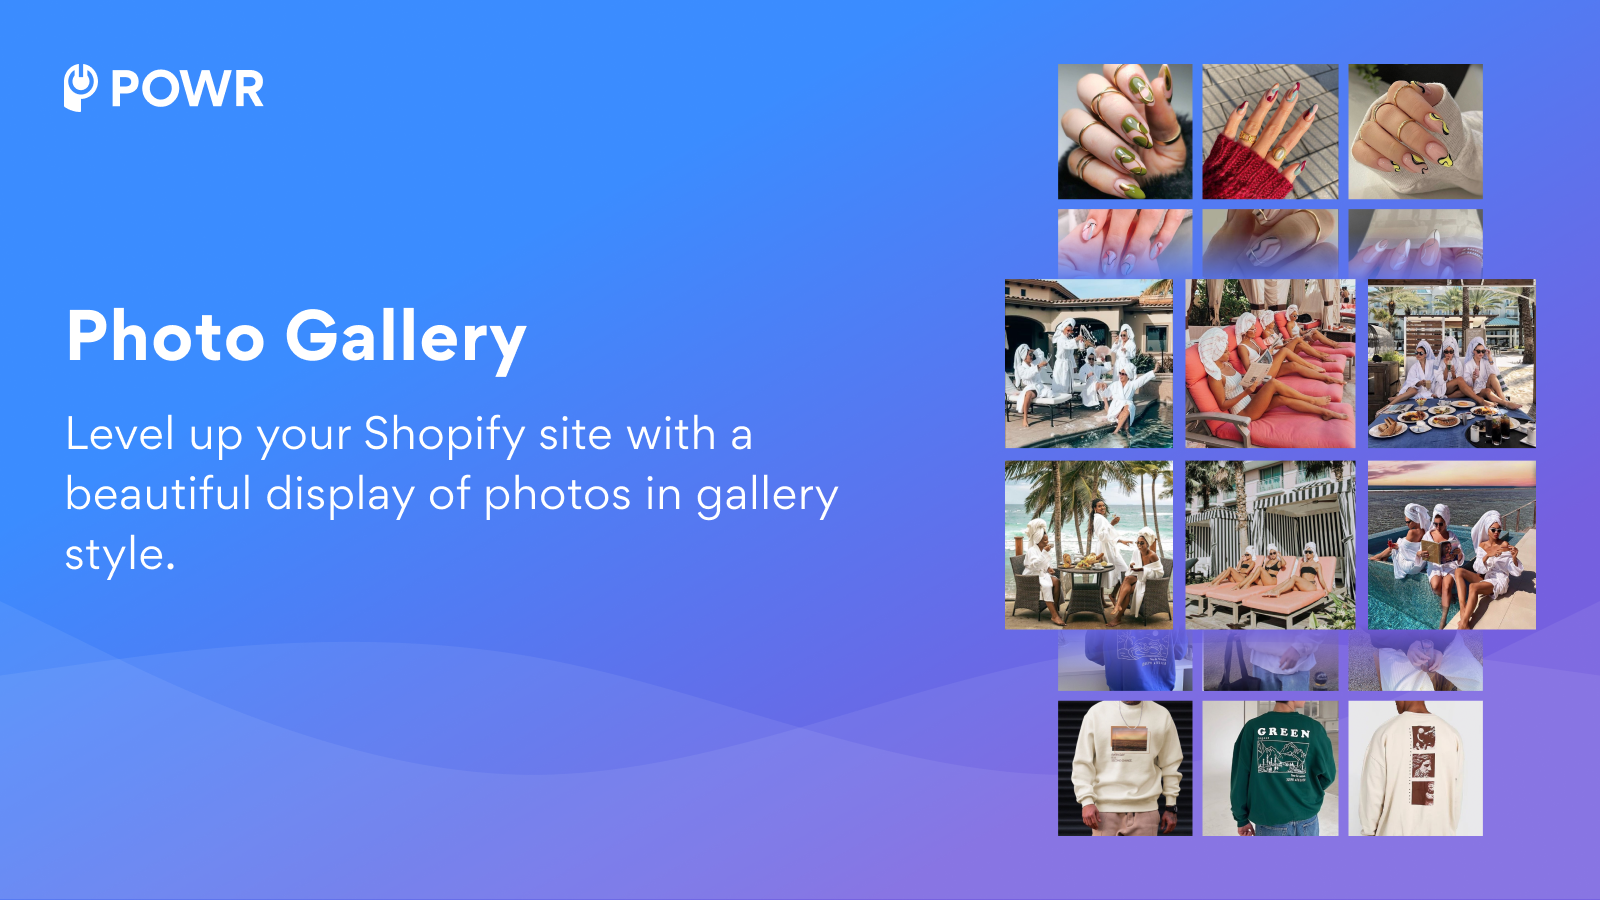 用美丽的照片展示提升您的Shopify网站